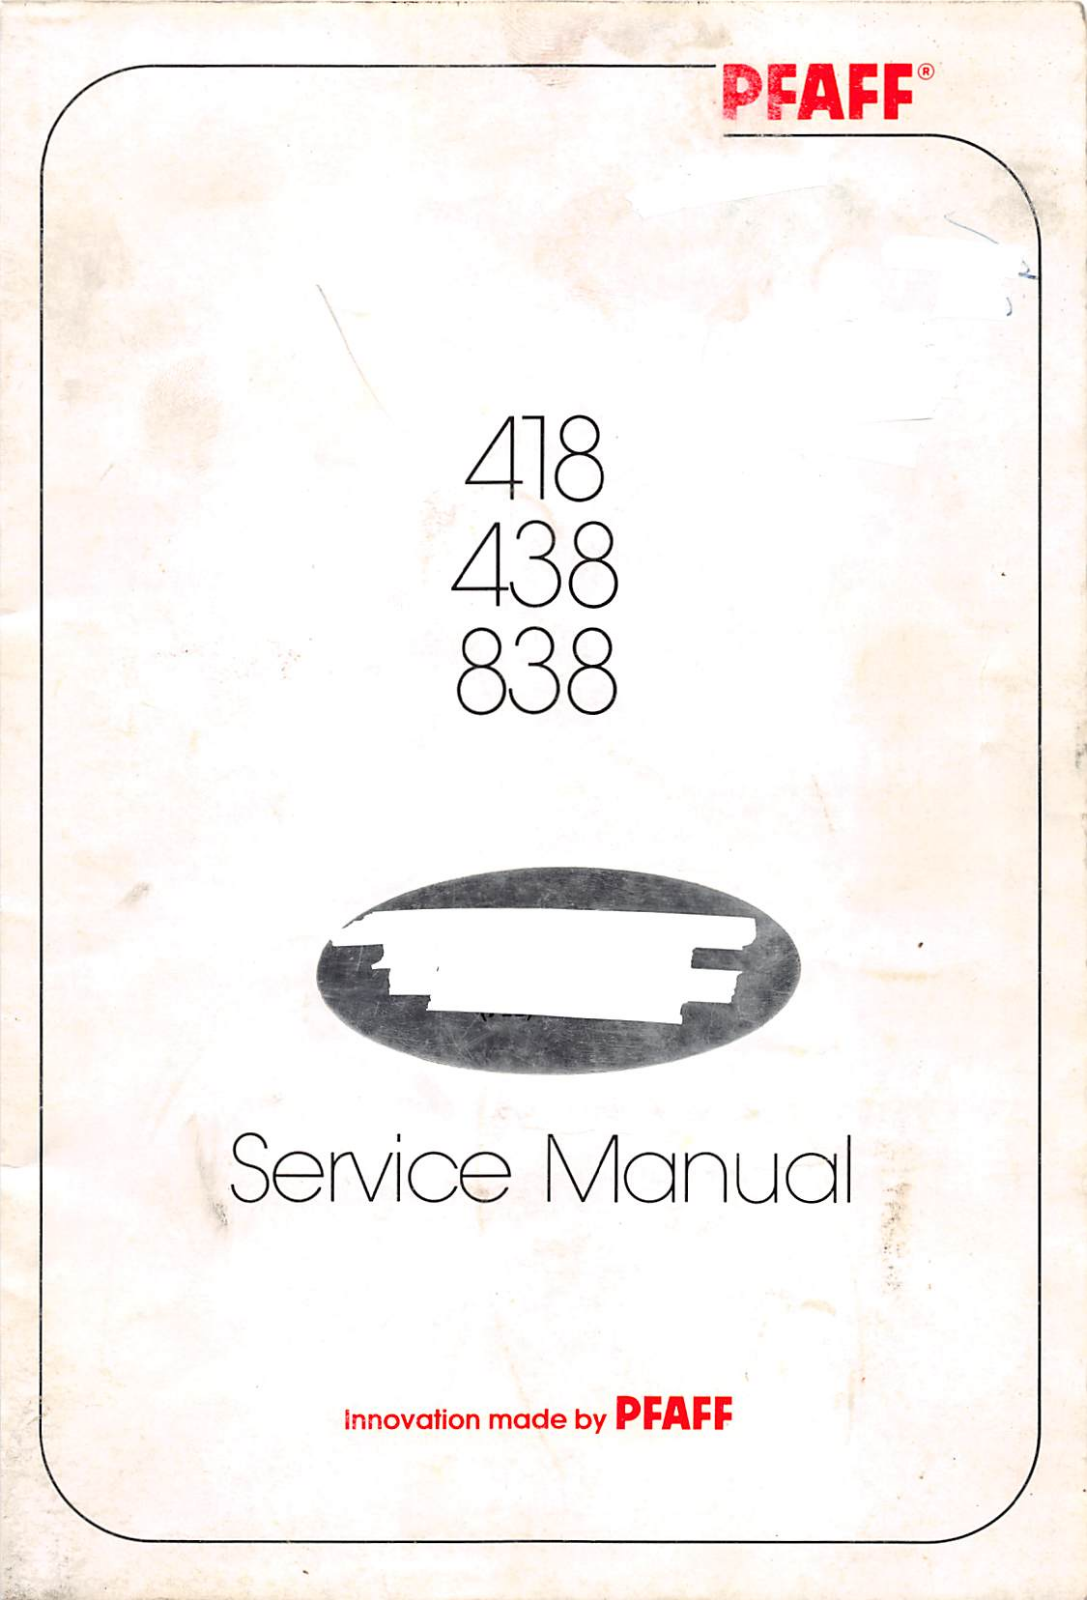 Pfaff 418, 438, 838 Service Manual